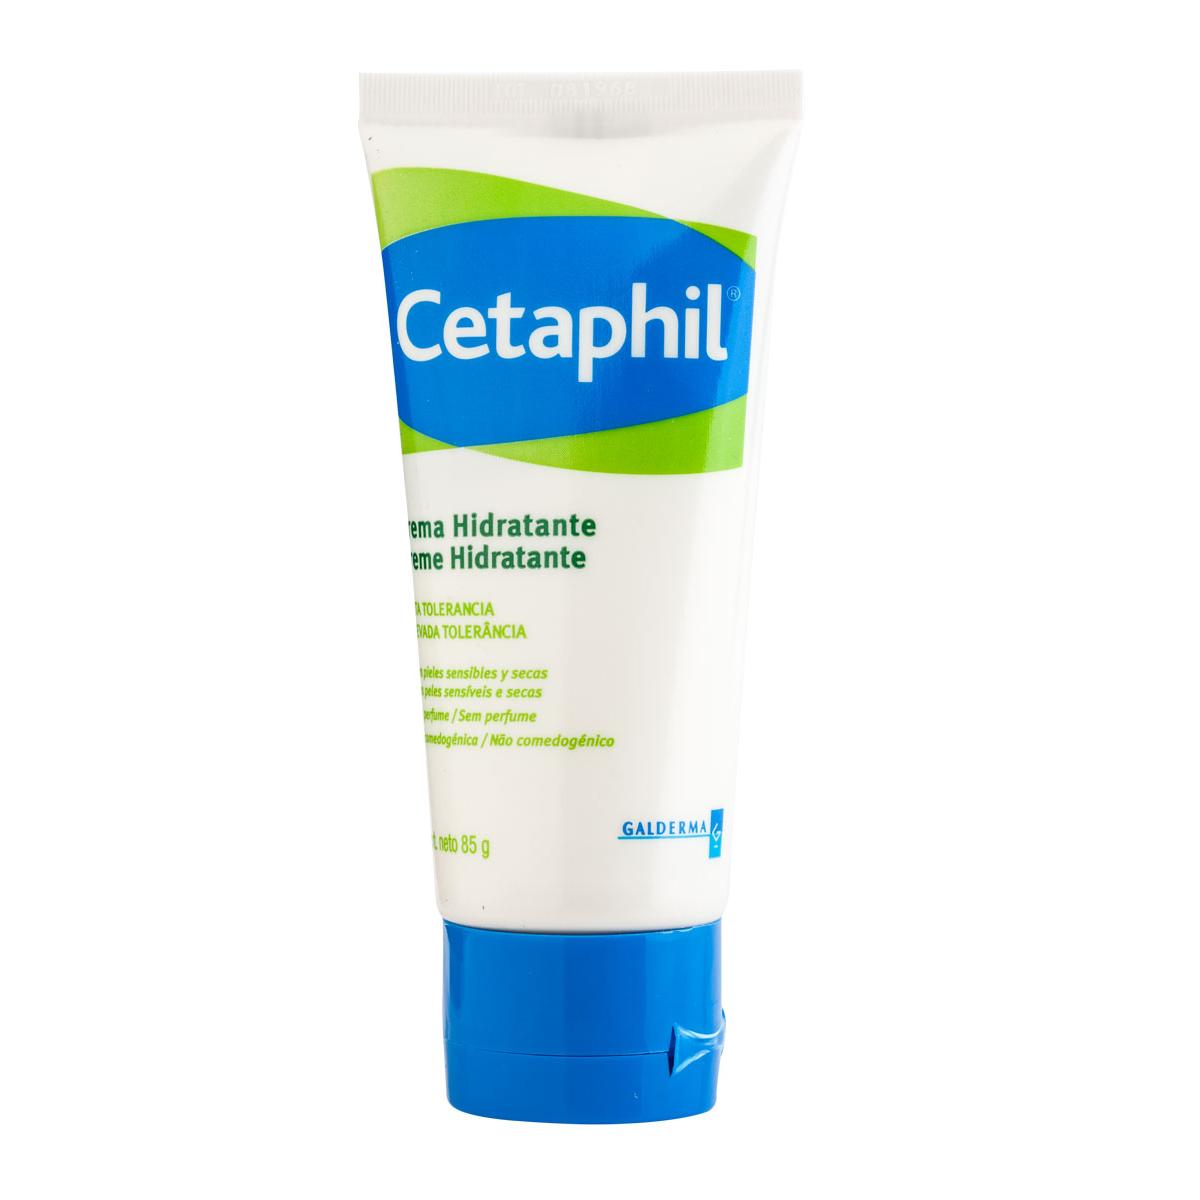 Cetaphil - Cetaphil crema hidratante 85 gramos